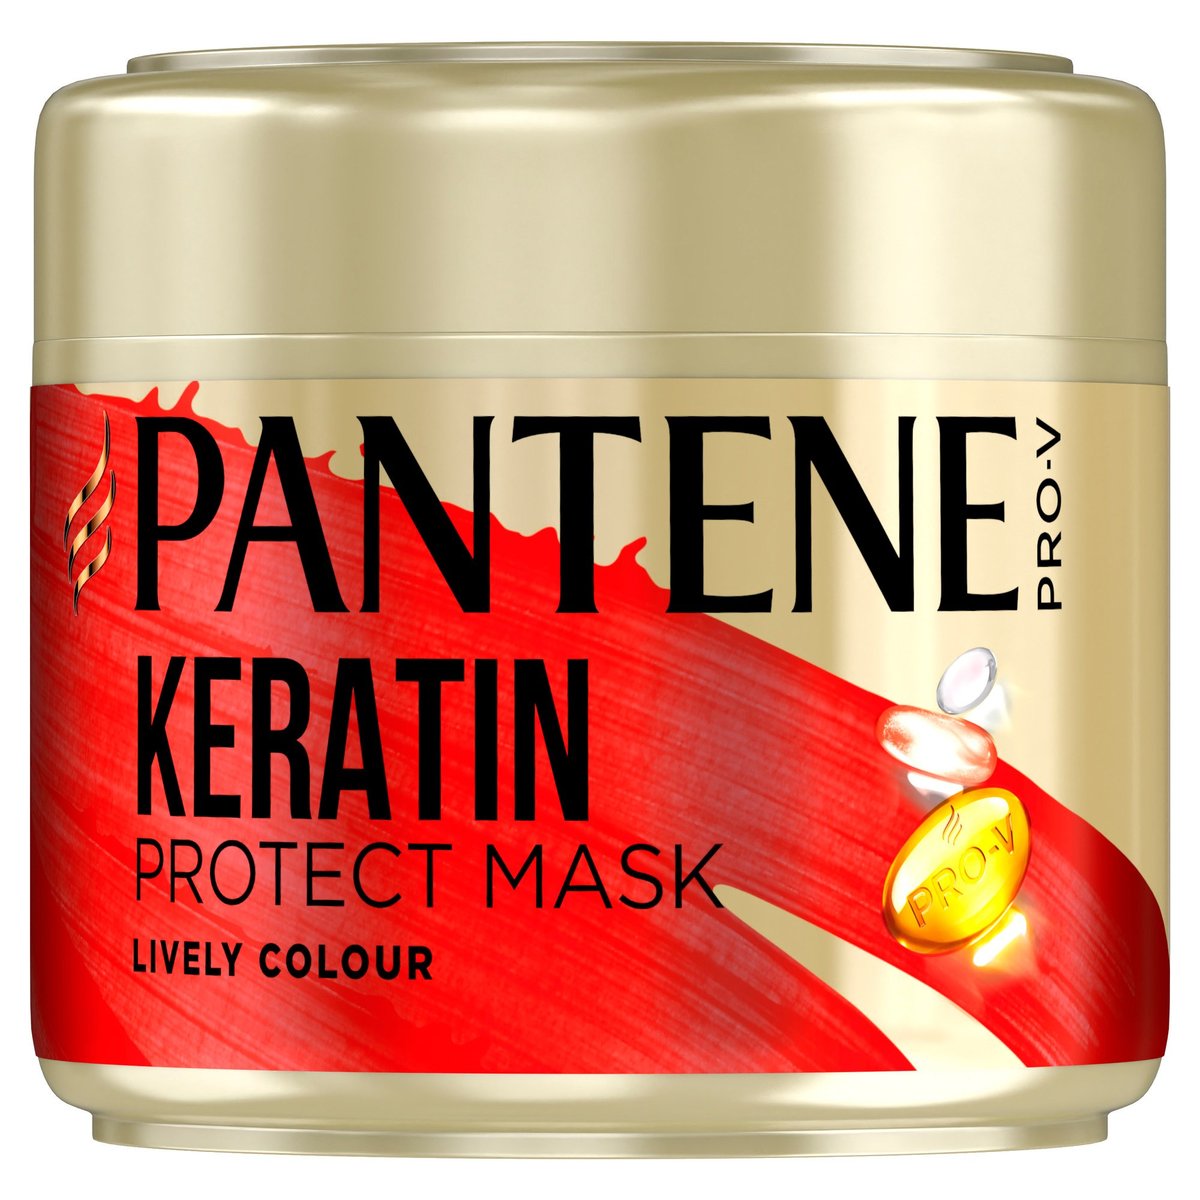 Pantene Pro-V Colour Protect keratinová vlasová maska pro zářivou barvu vlasů